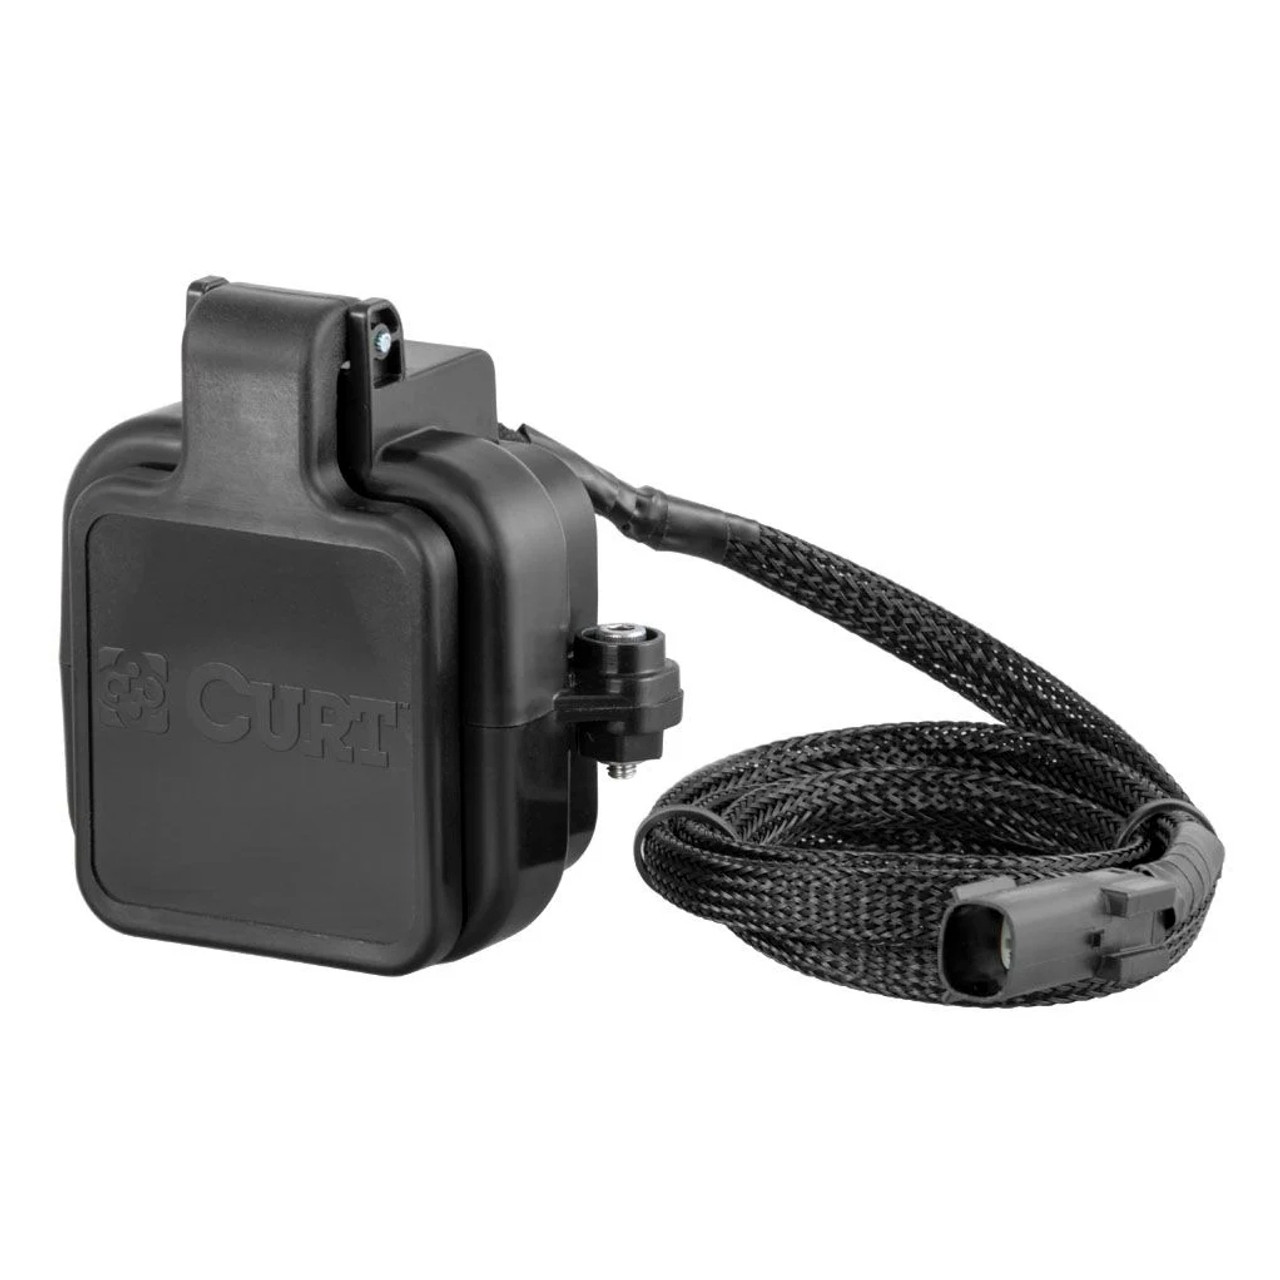 Curt Tailgate Sensor 2in Cap  - CUR58265